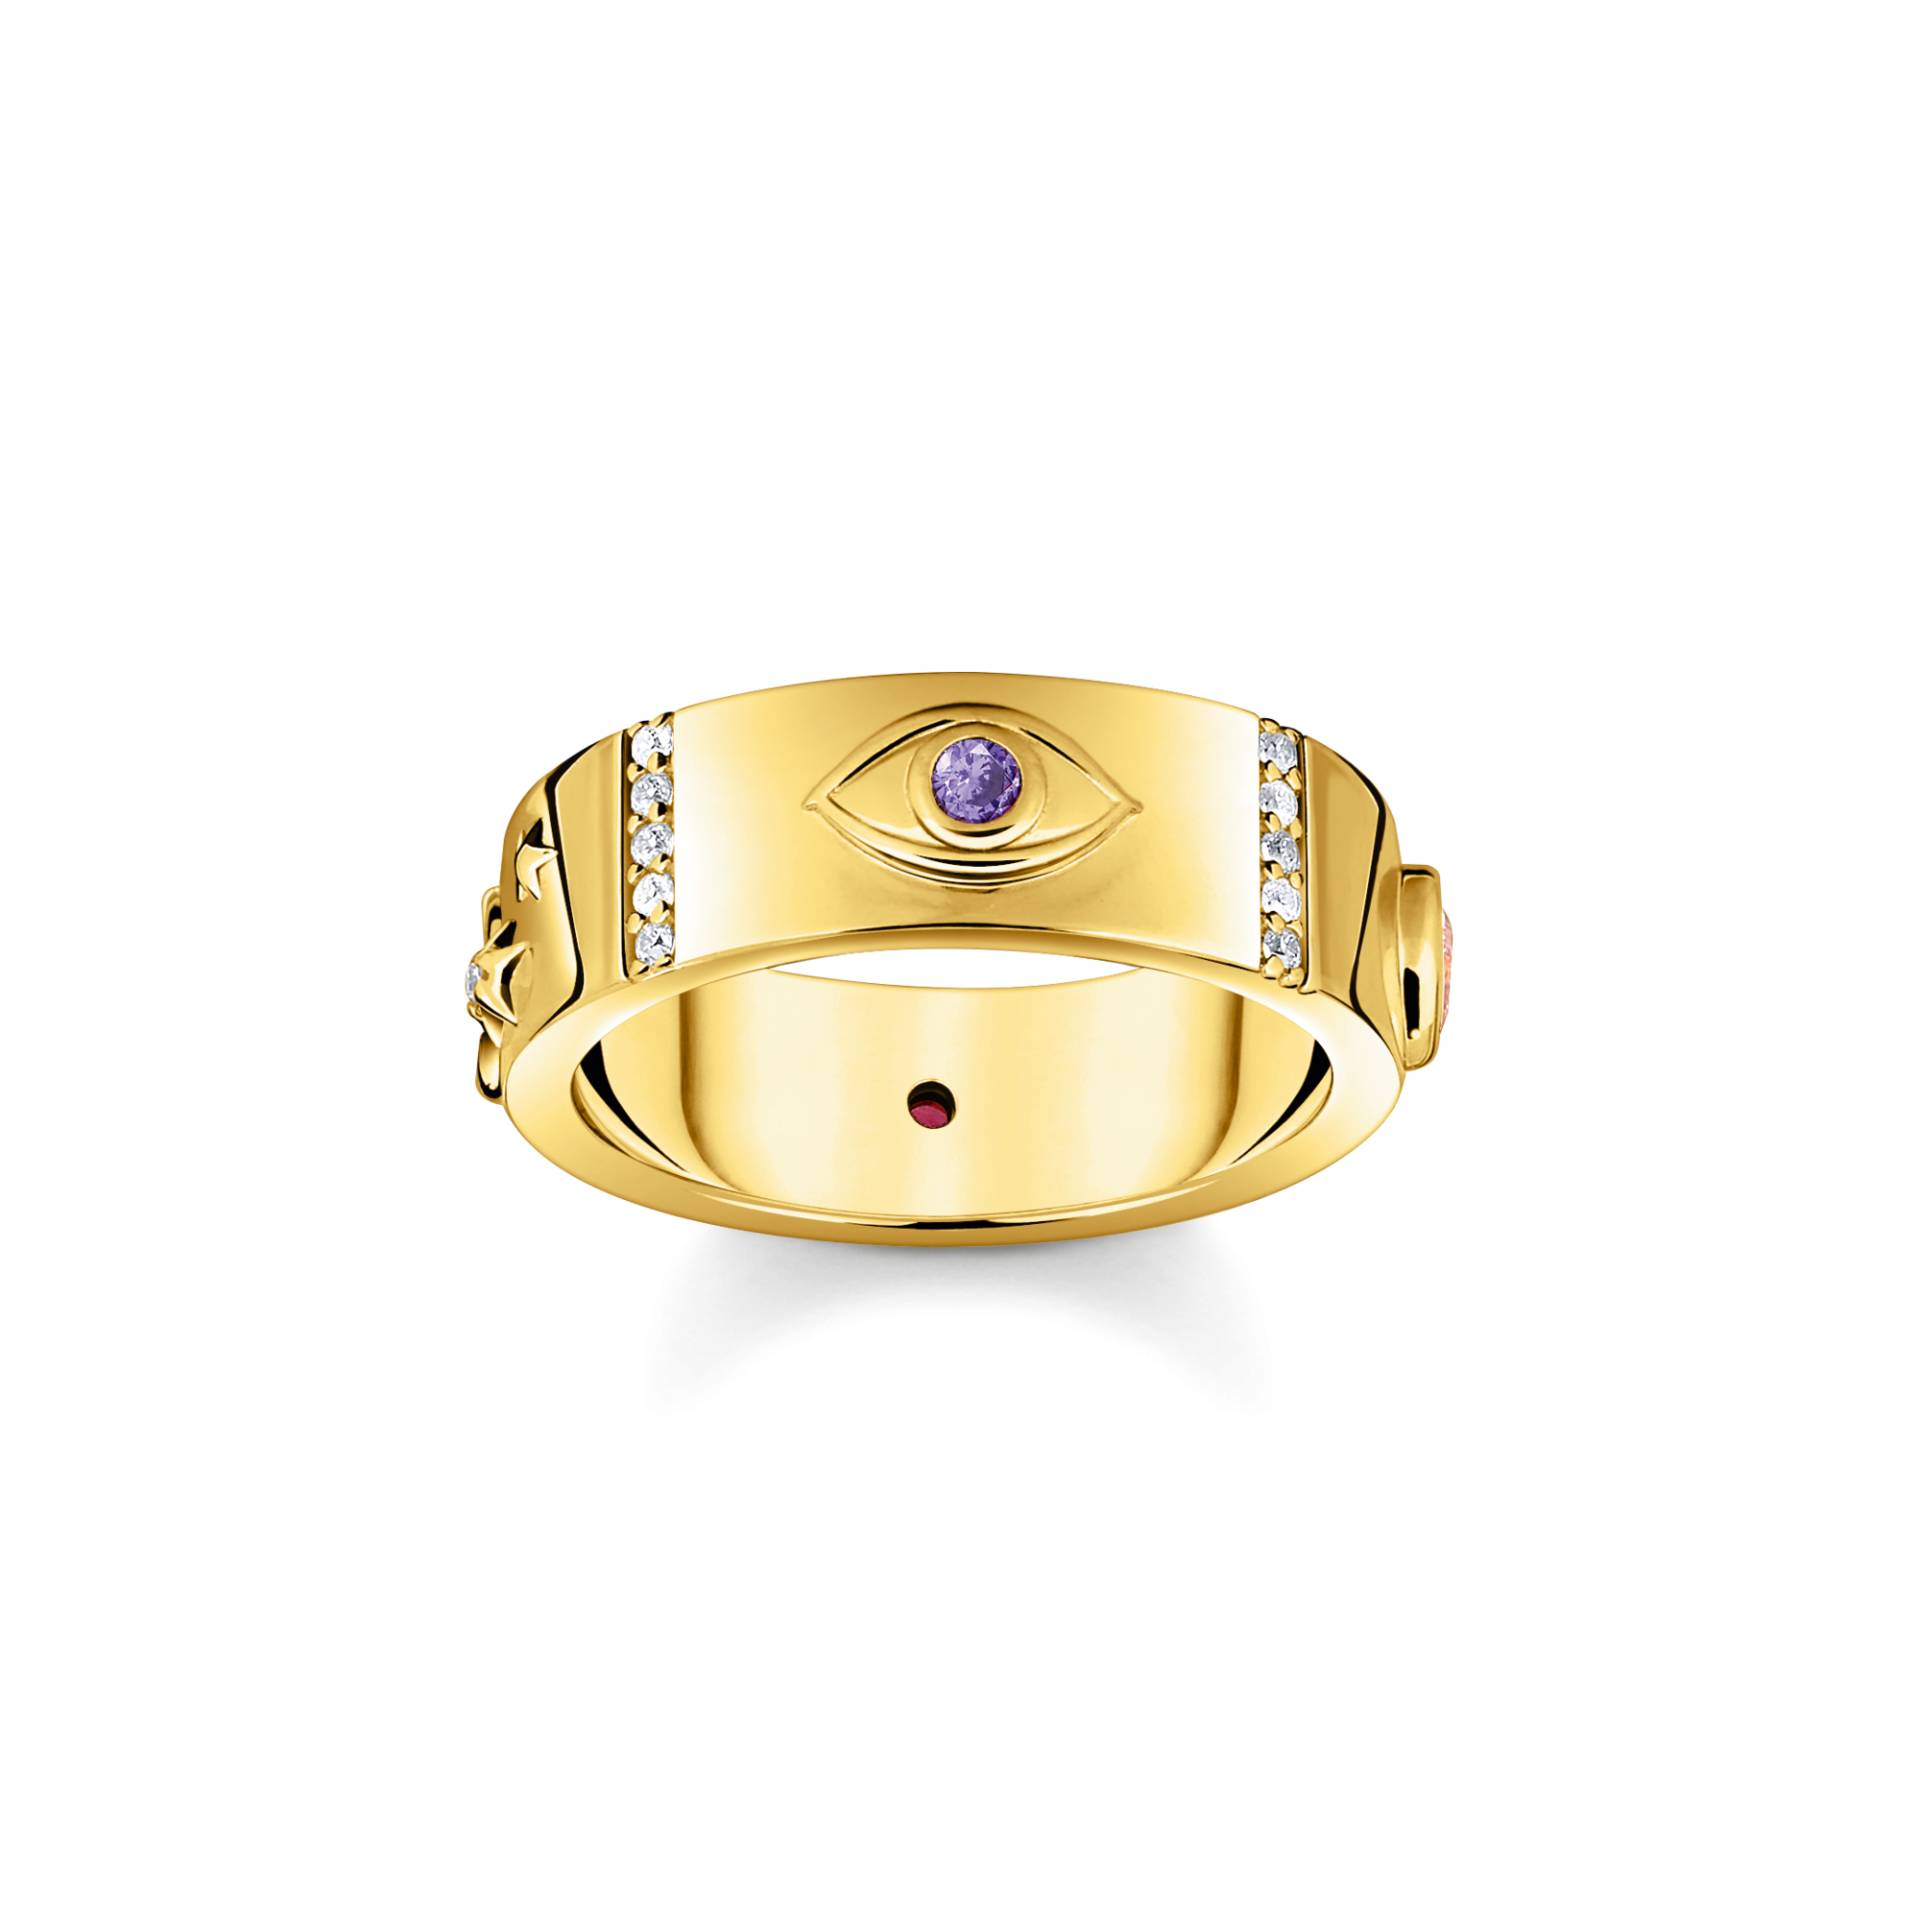 Thomas Sabo Ring mit kosmischen Symbolen und bunten Steinen vergoldet mehrfarbig TR2439-995-7-50 von Thomas Sabo